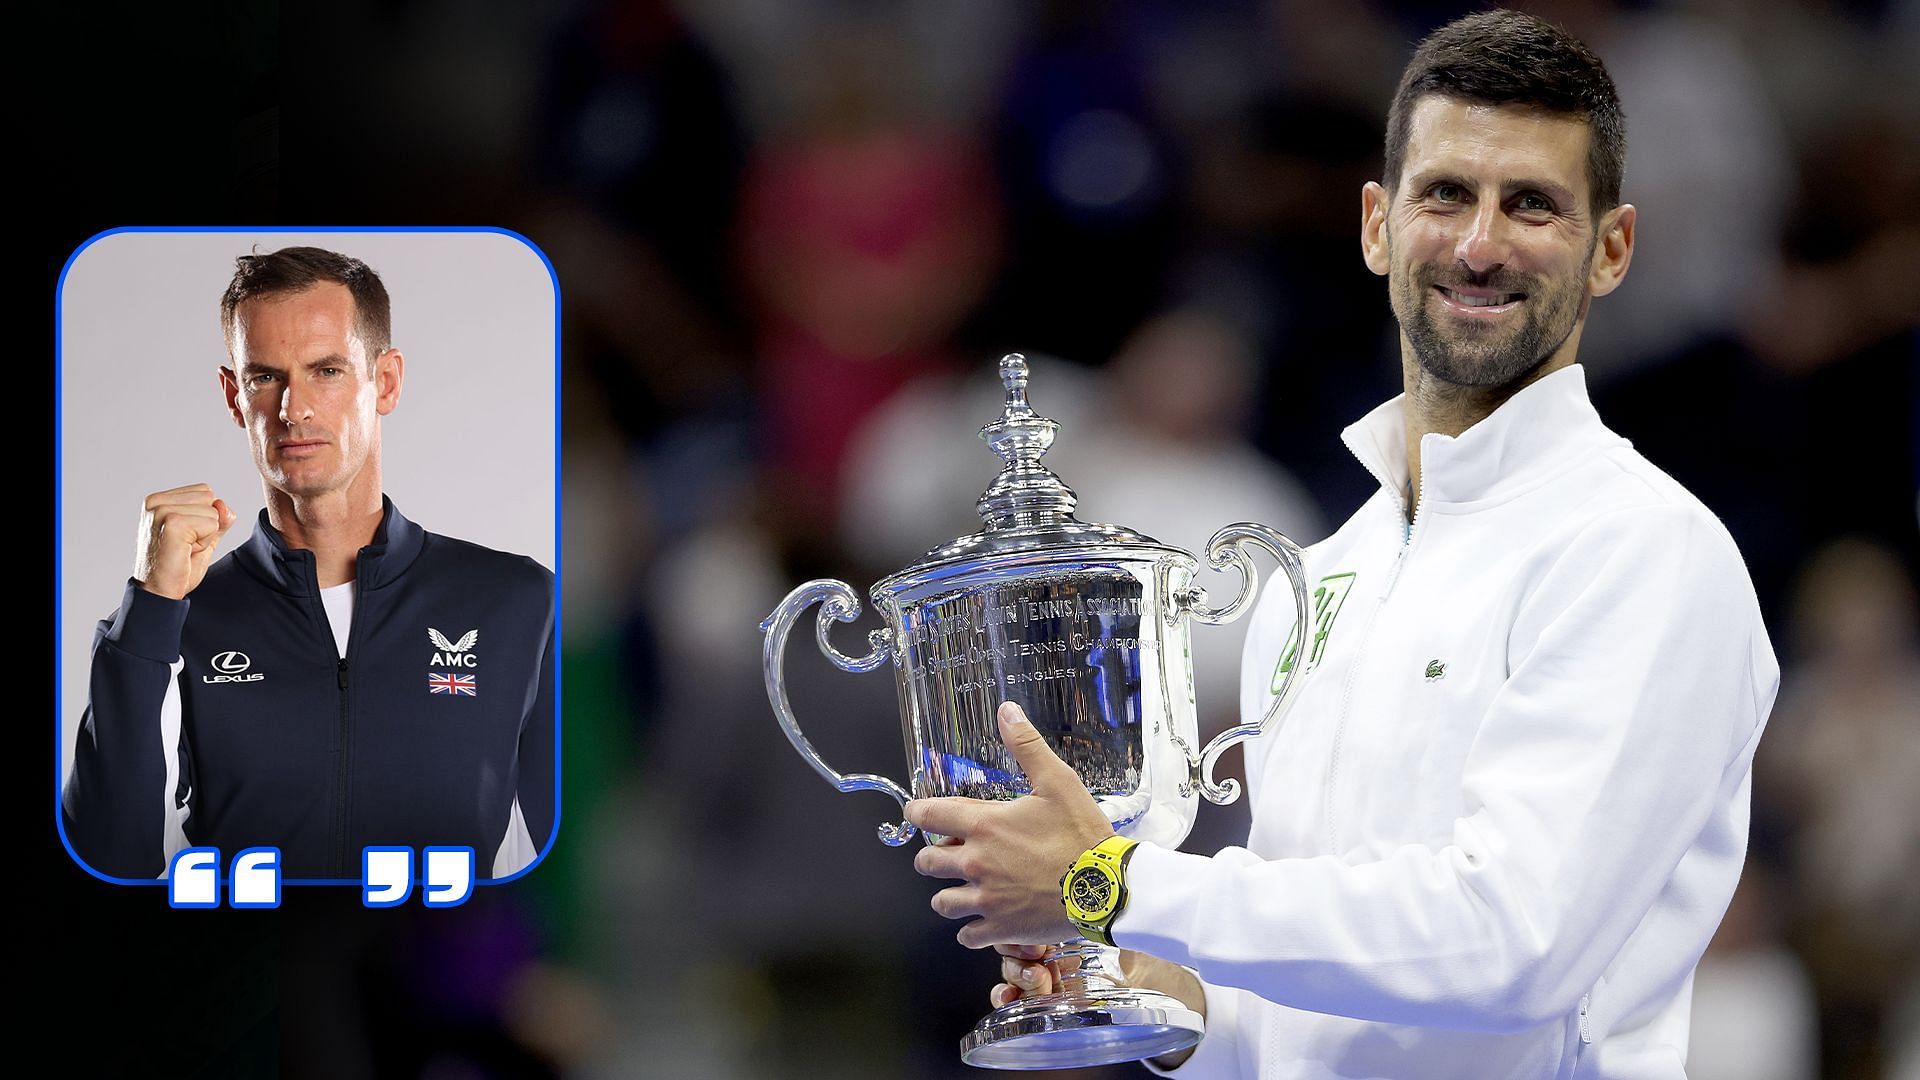 Andy Murray shares his thoughts on Novak Djokovic